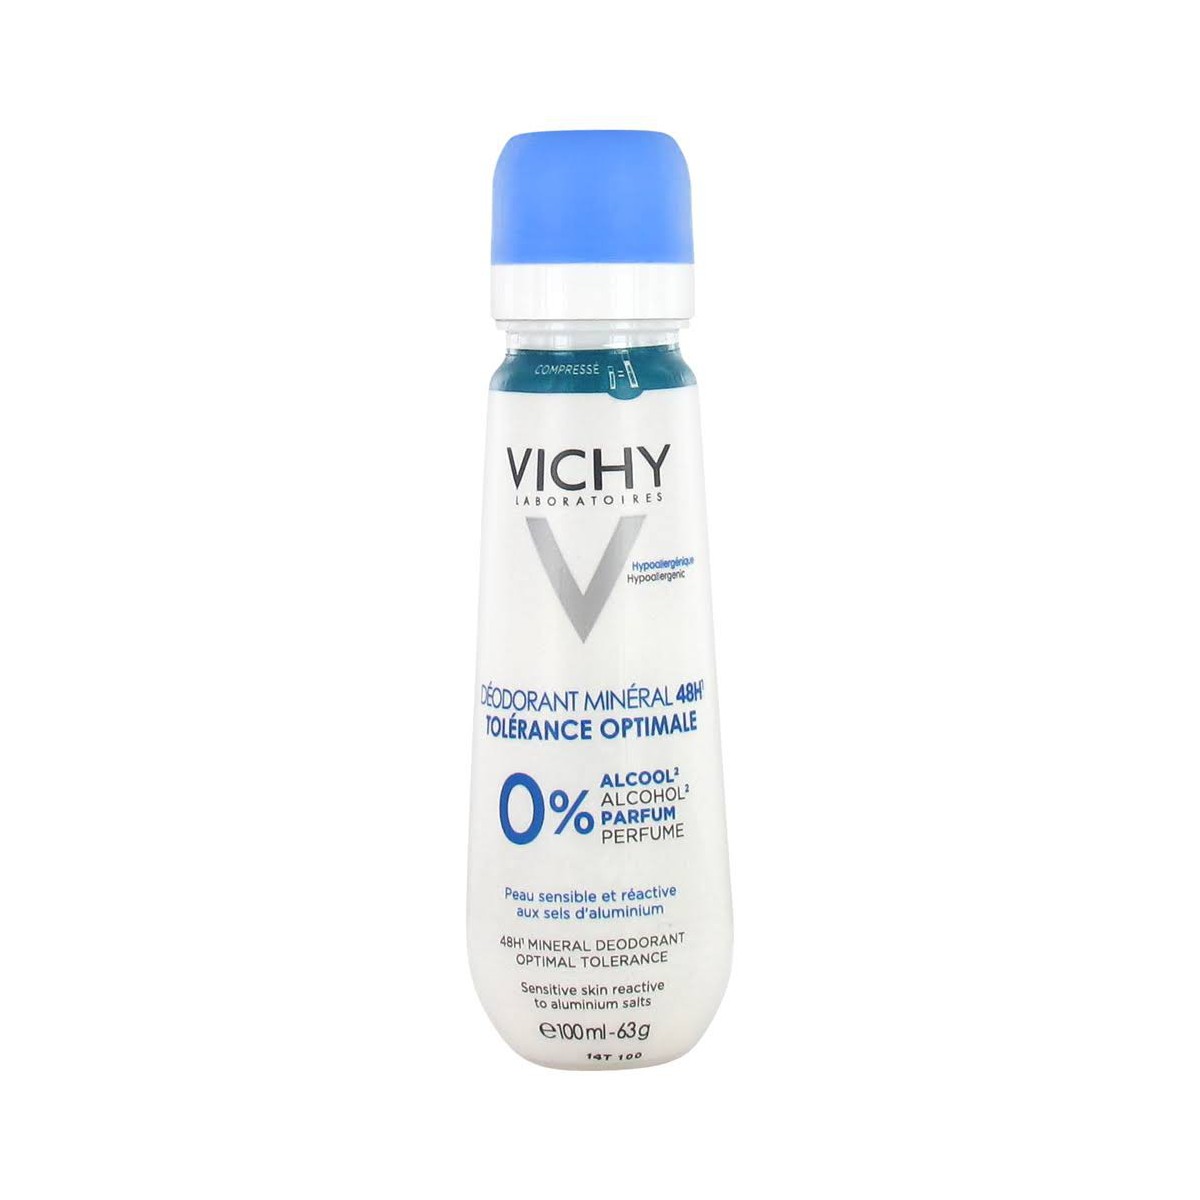 Vichy Deo Mineral Opti-Tolerancia 100ml